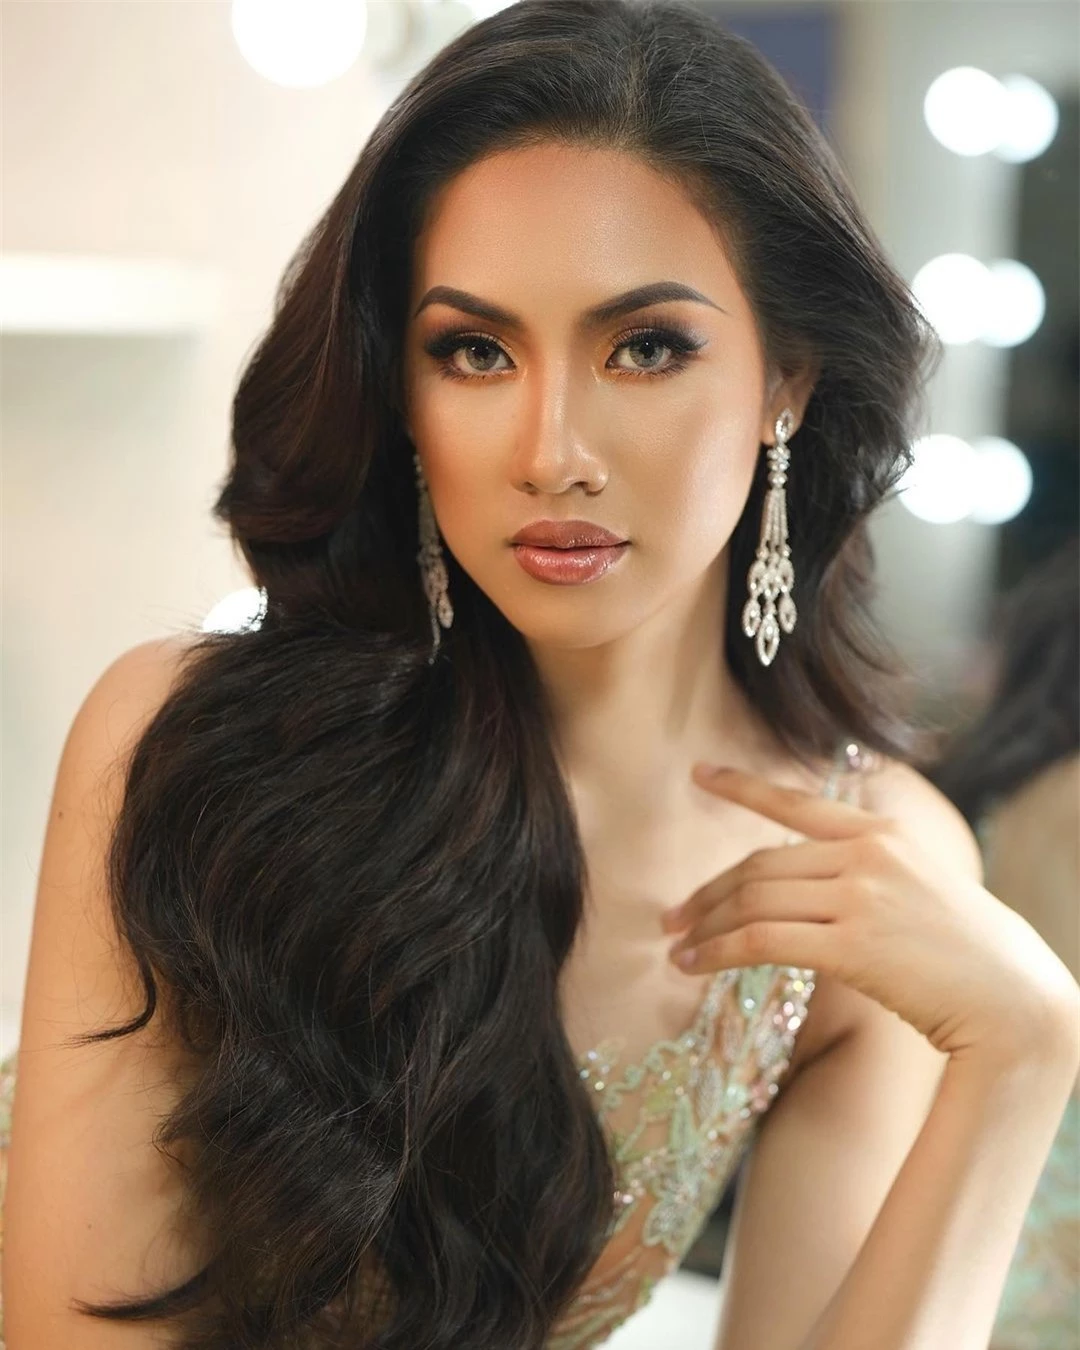 Tân Hoa hậu Hoàn vũ Campuchia được khen ngợi ảnh 3